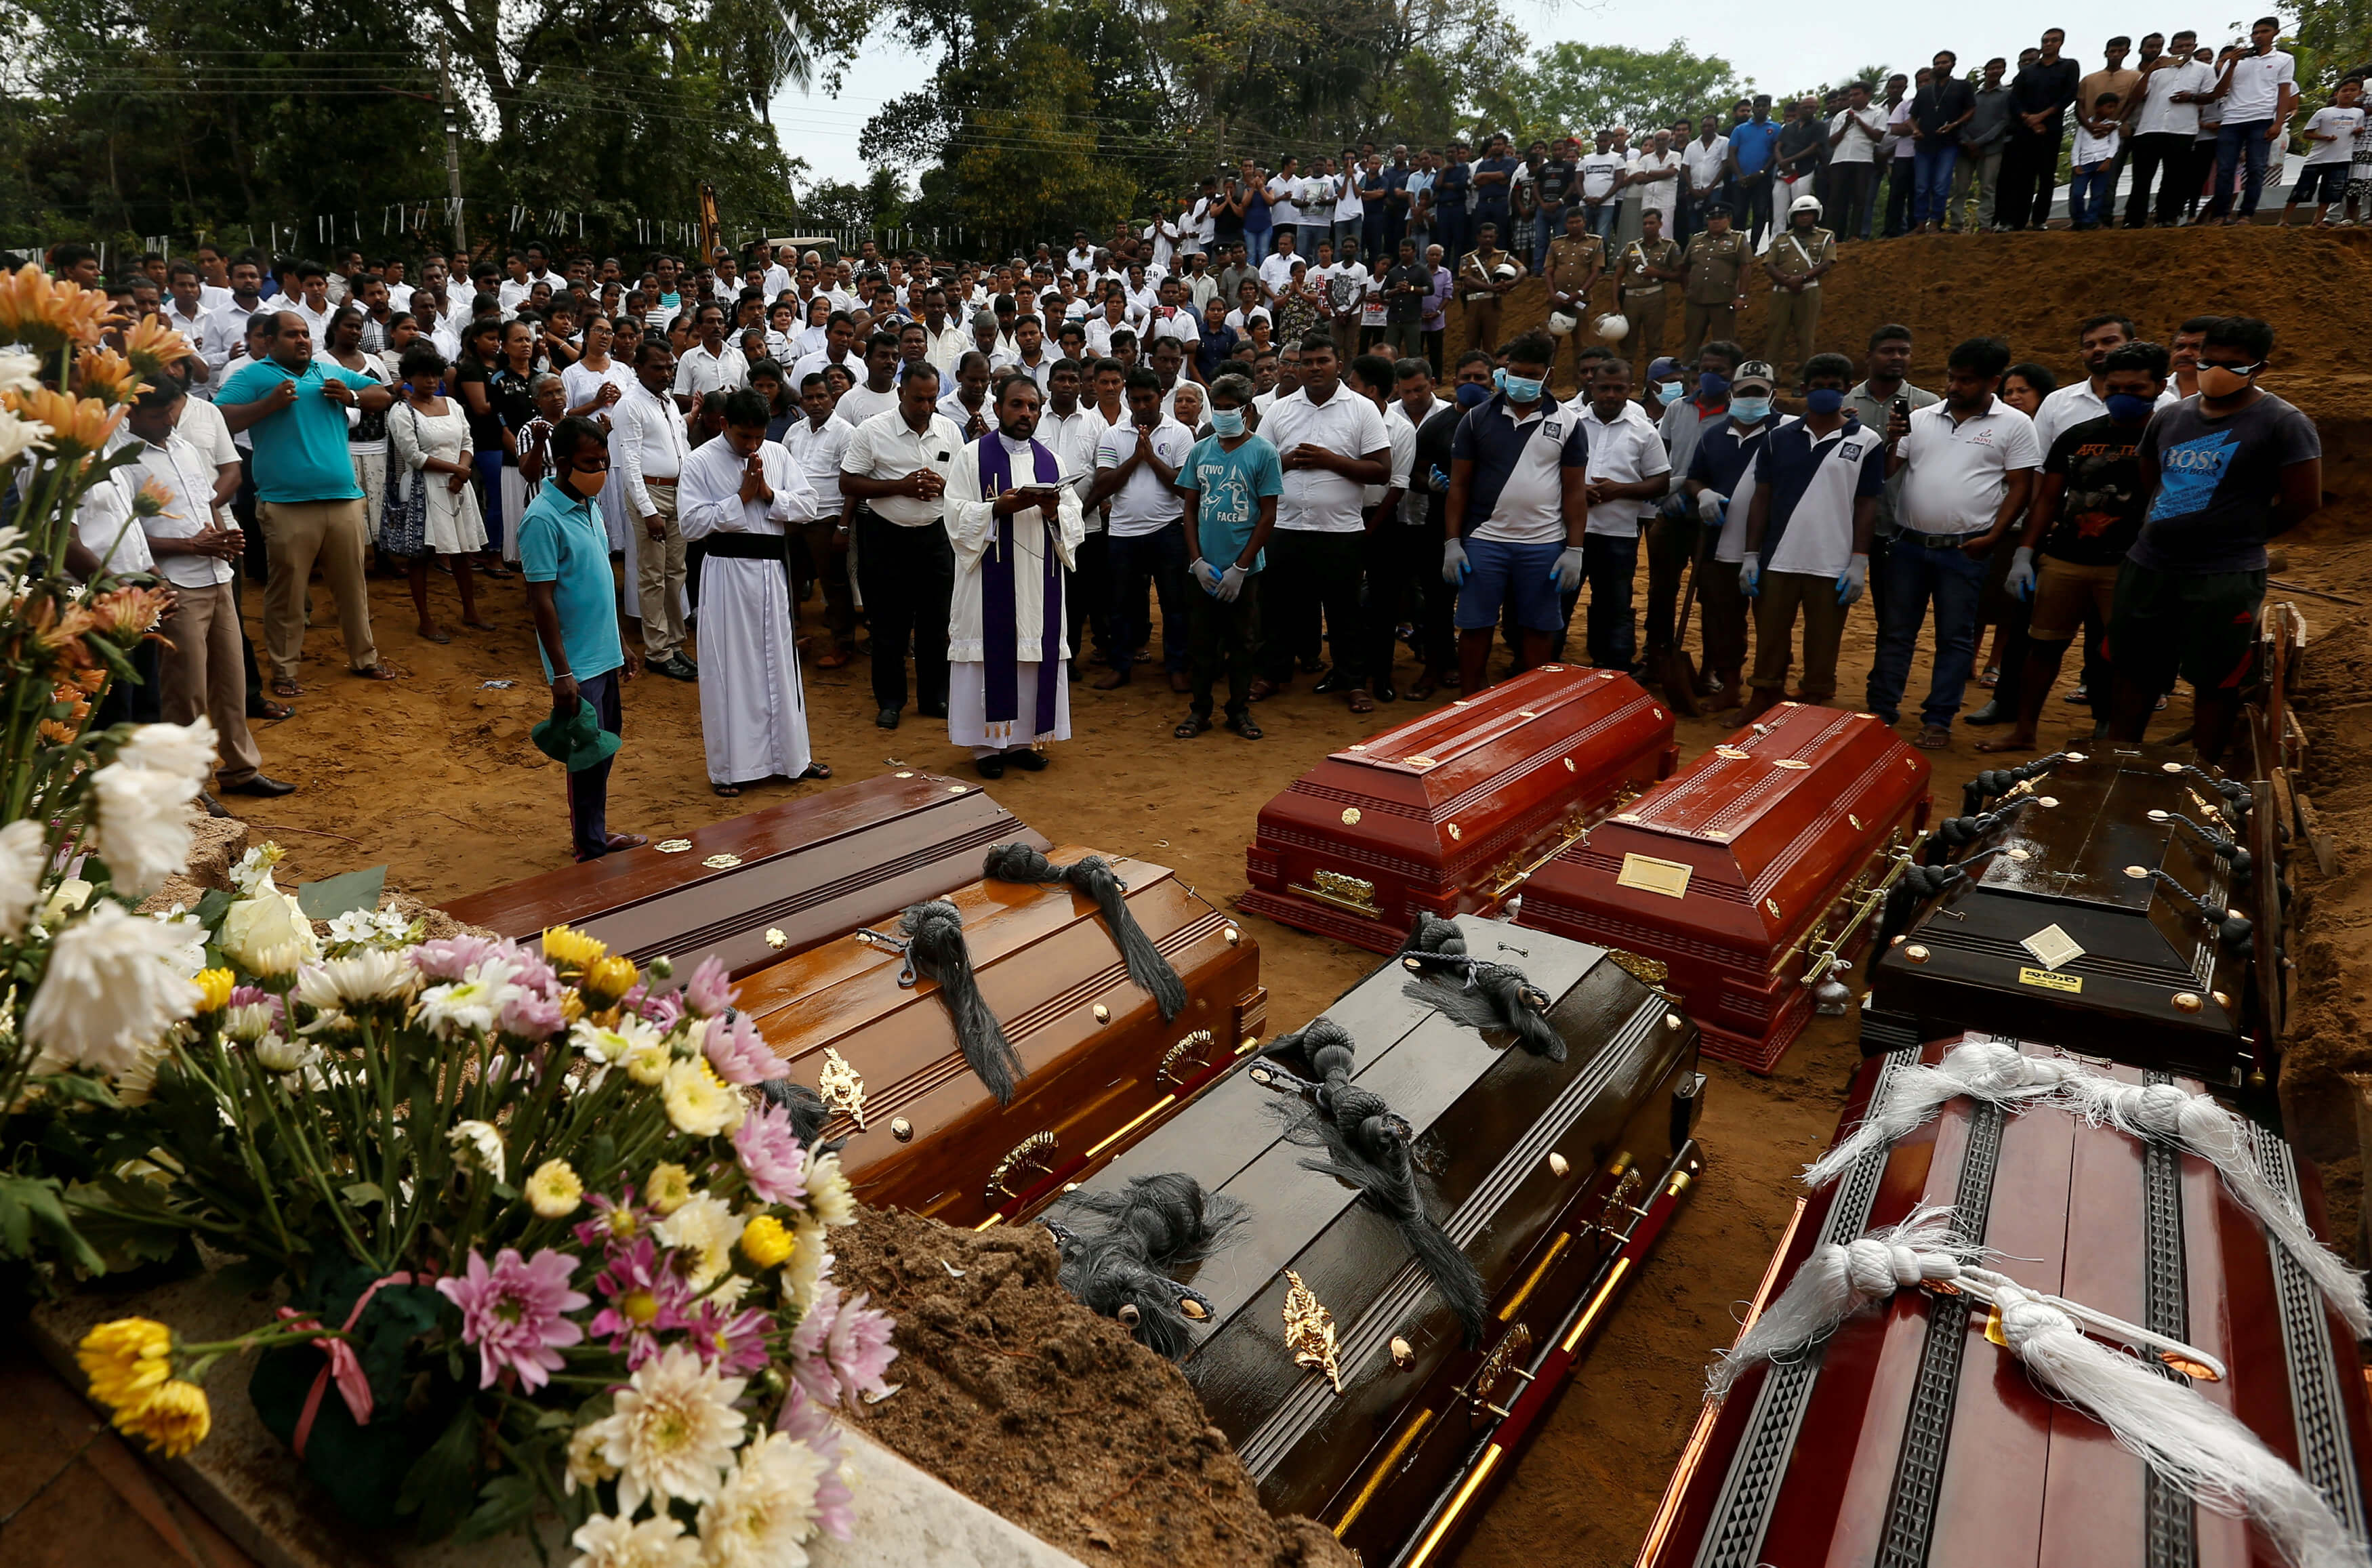 Σρι Λάνκα: Δεν σταματά το “λουτρό αίματος” – 15 νεκροί από ανταλλαγή πυροβολισμών!